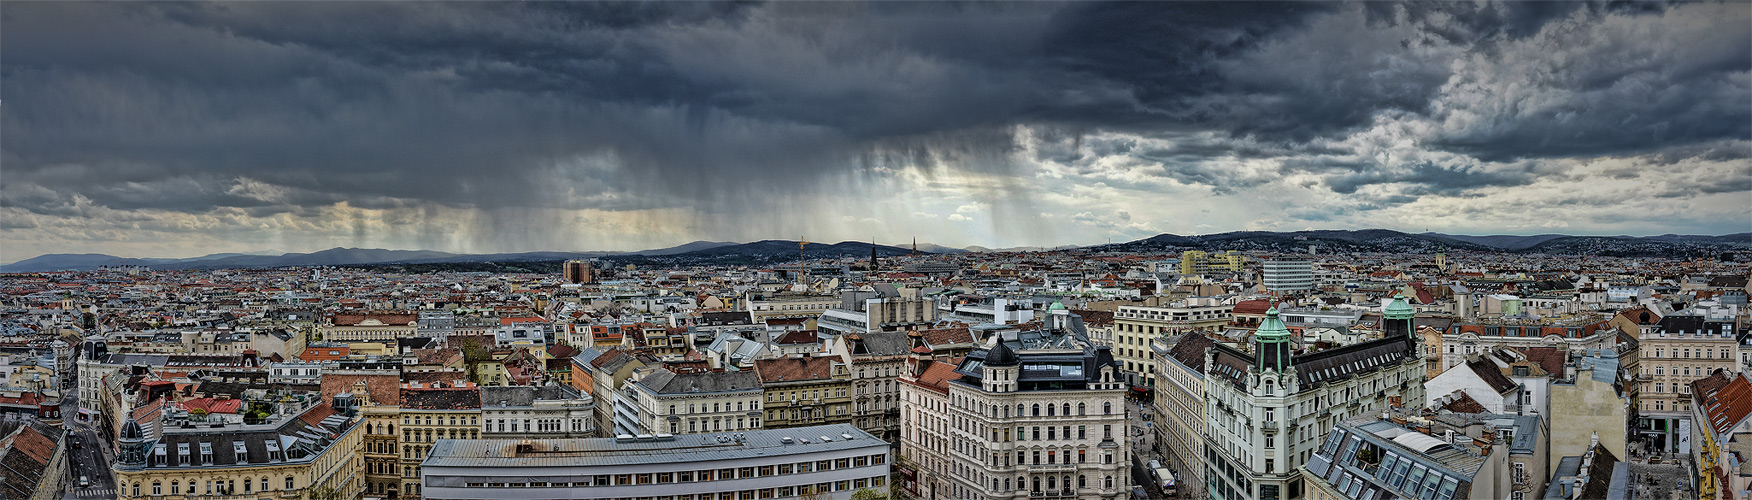 Gewitterstimmung über Wien